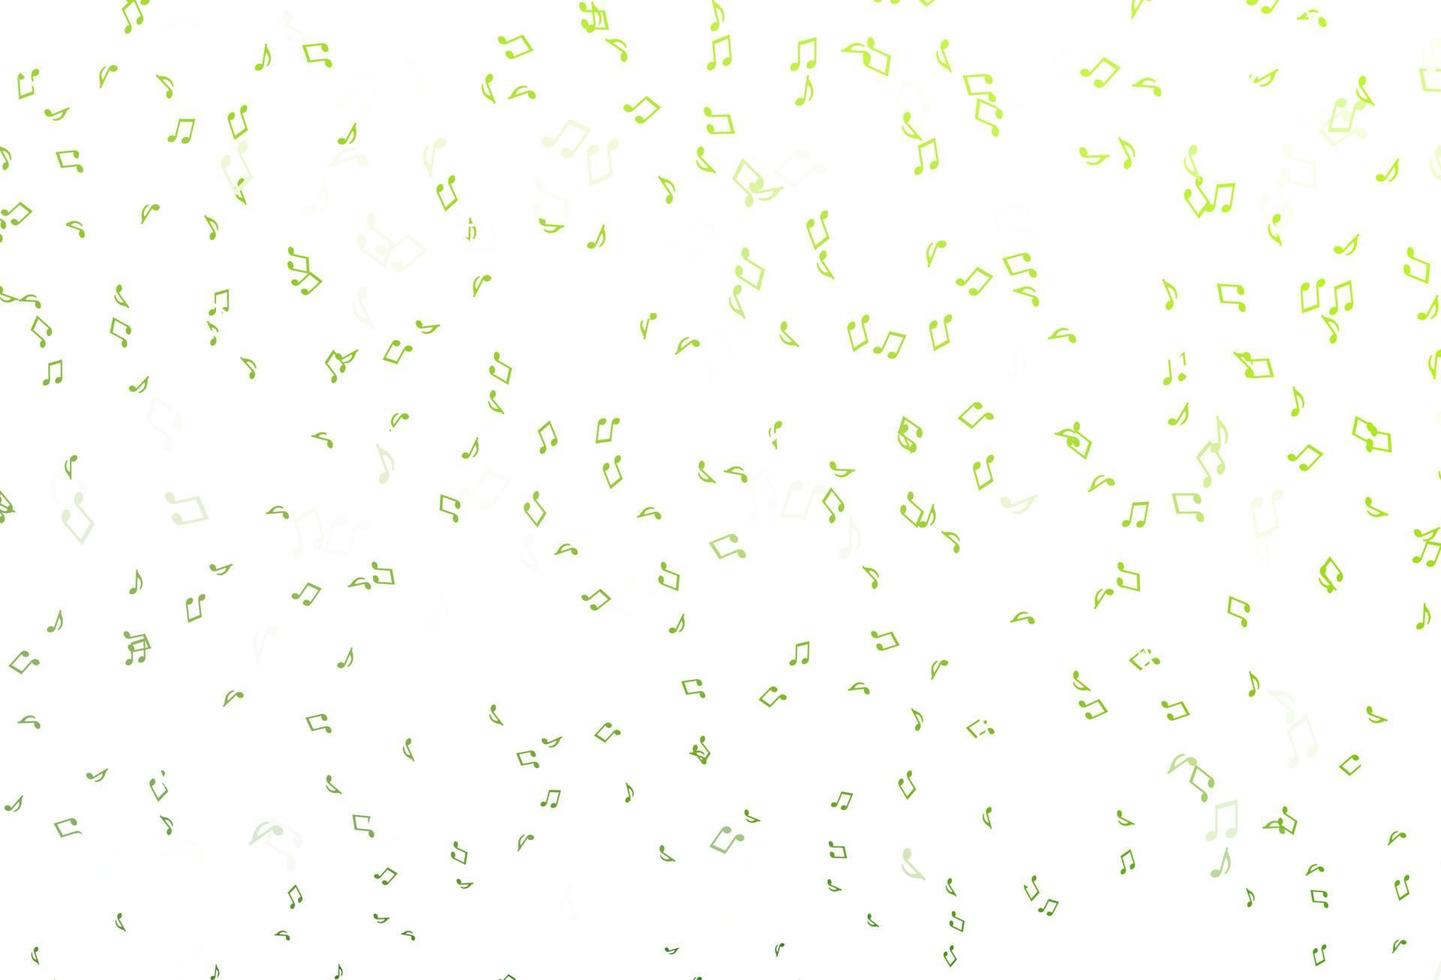 modelo de vetor verde claro com símbolos musicais.